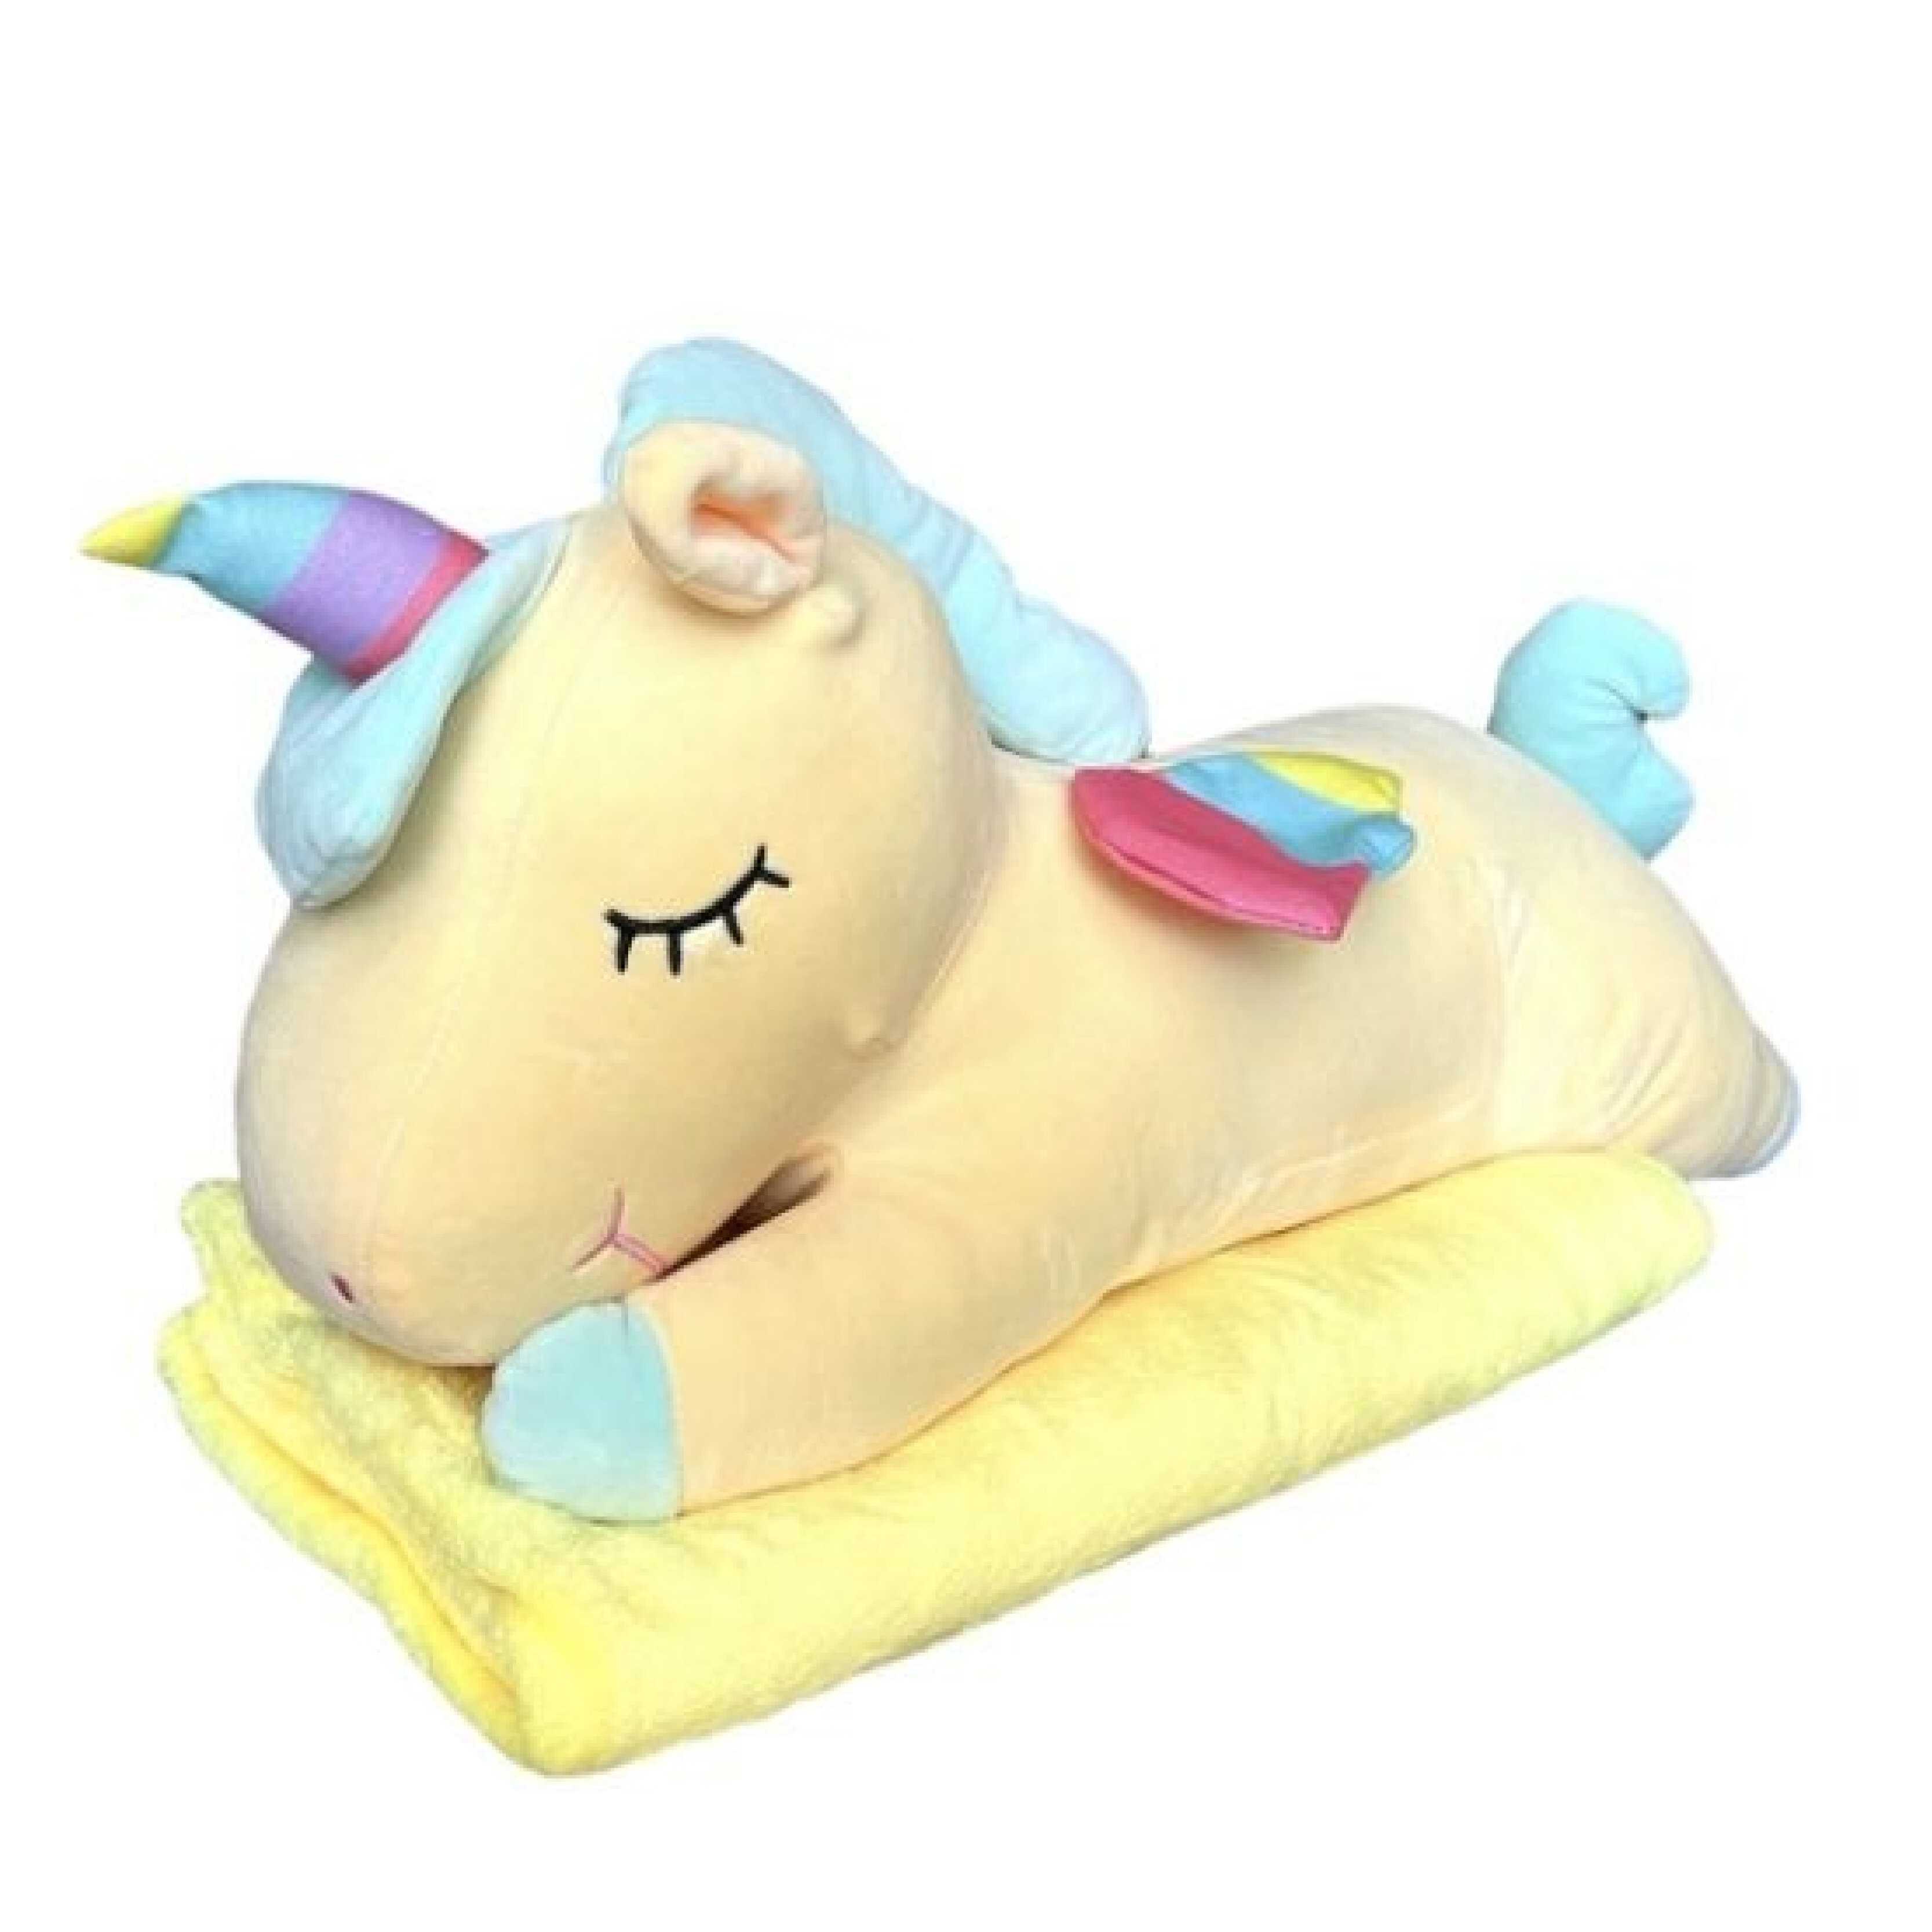 Мягкая игрушка La-LaLand Подушка с пледом 3 в 1, Единорог, желтый, 60 см мягкая игрушка подушка best toys единорог с пледом